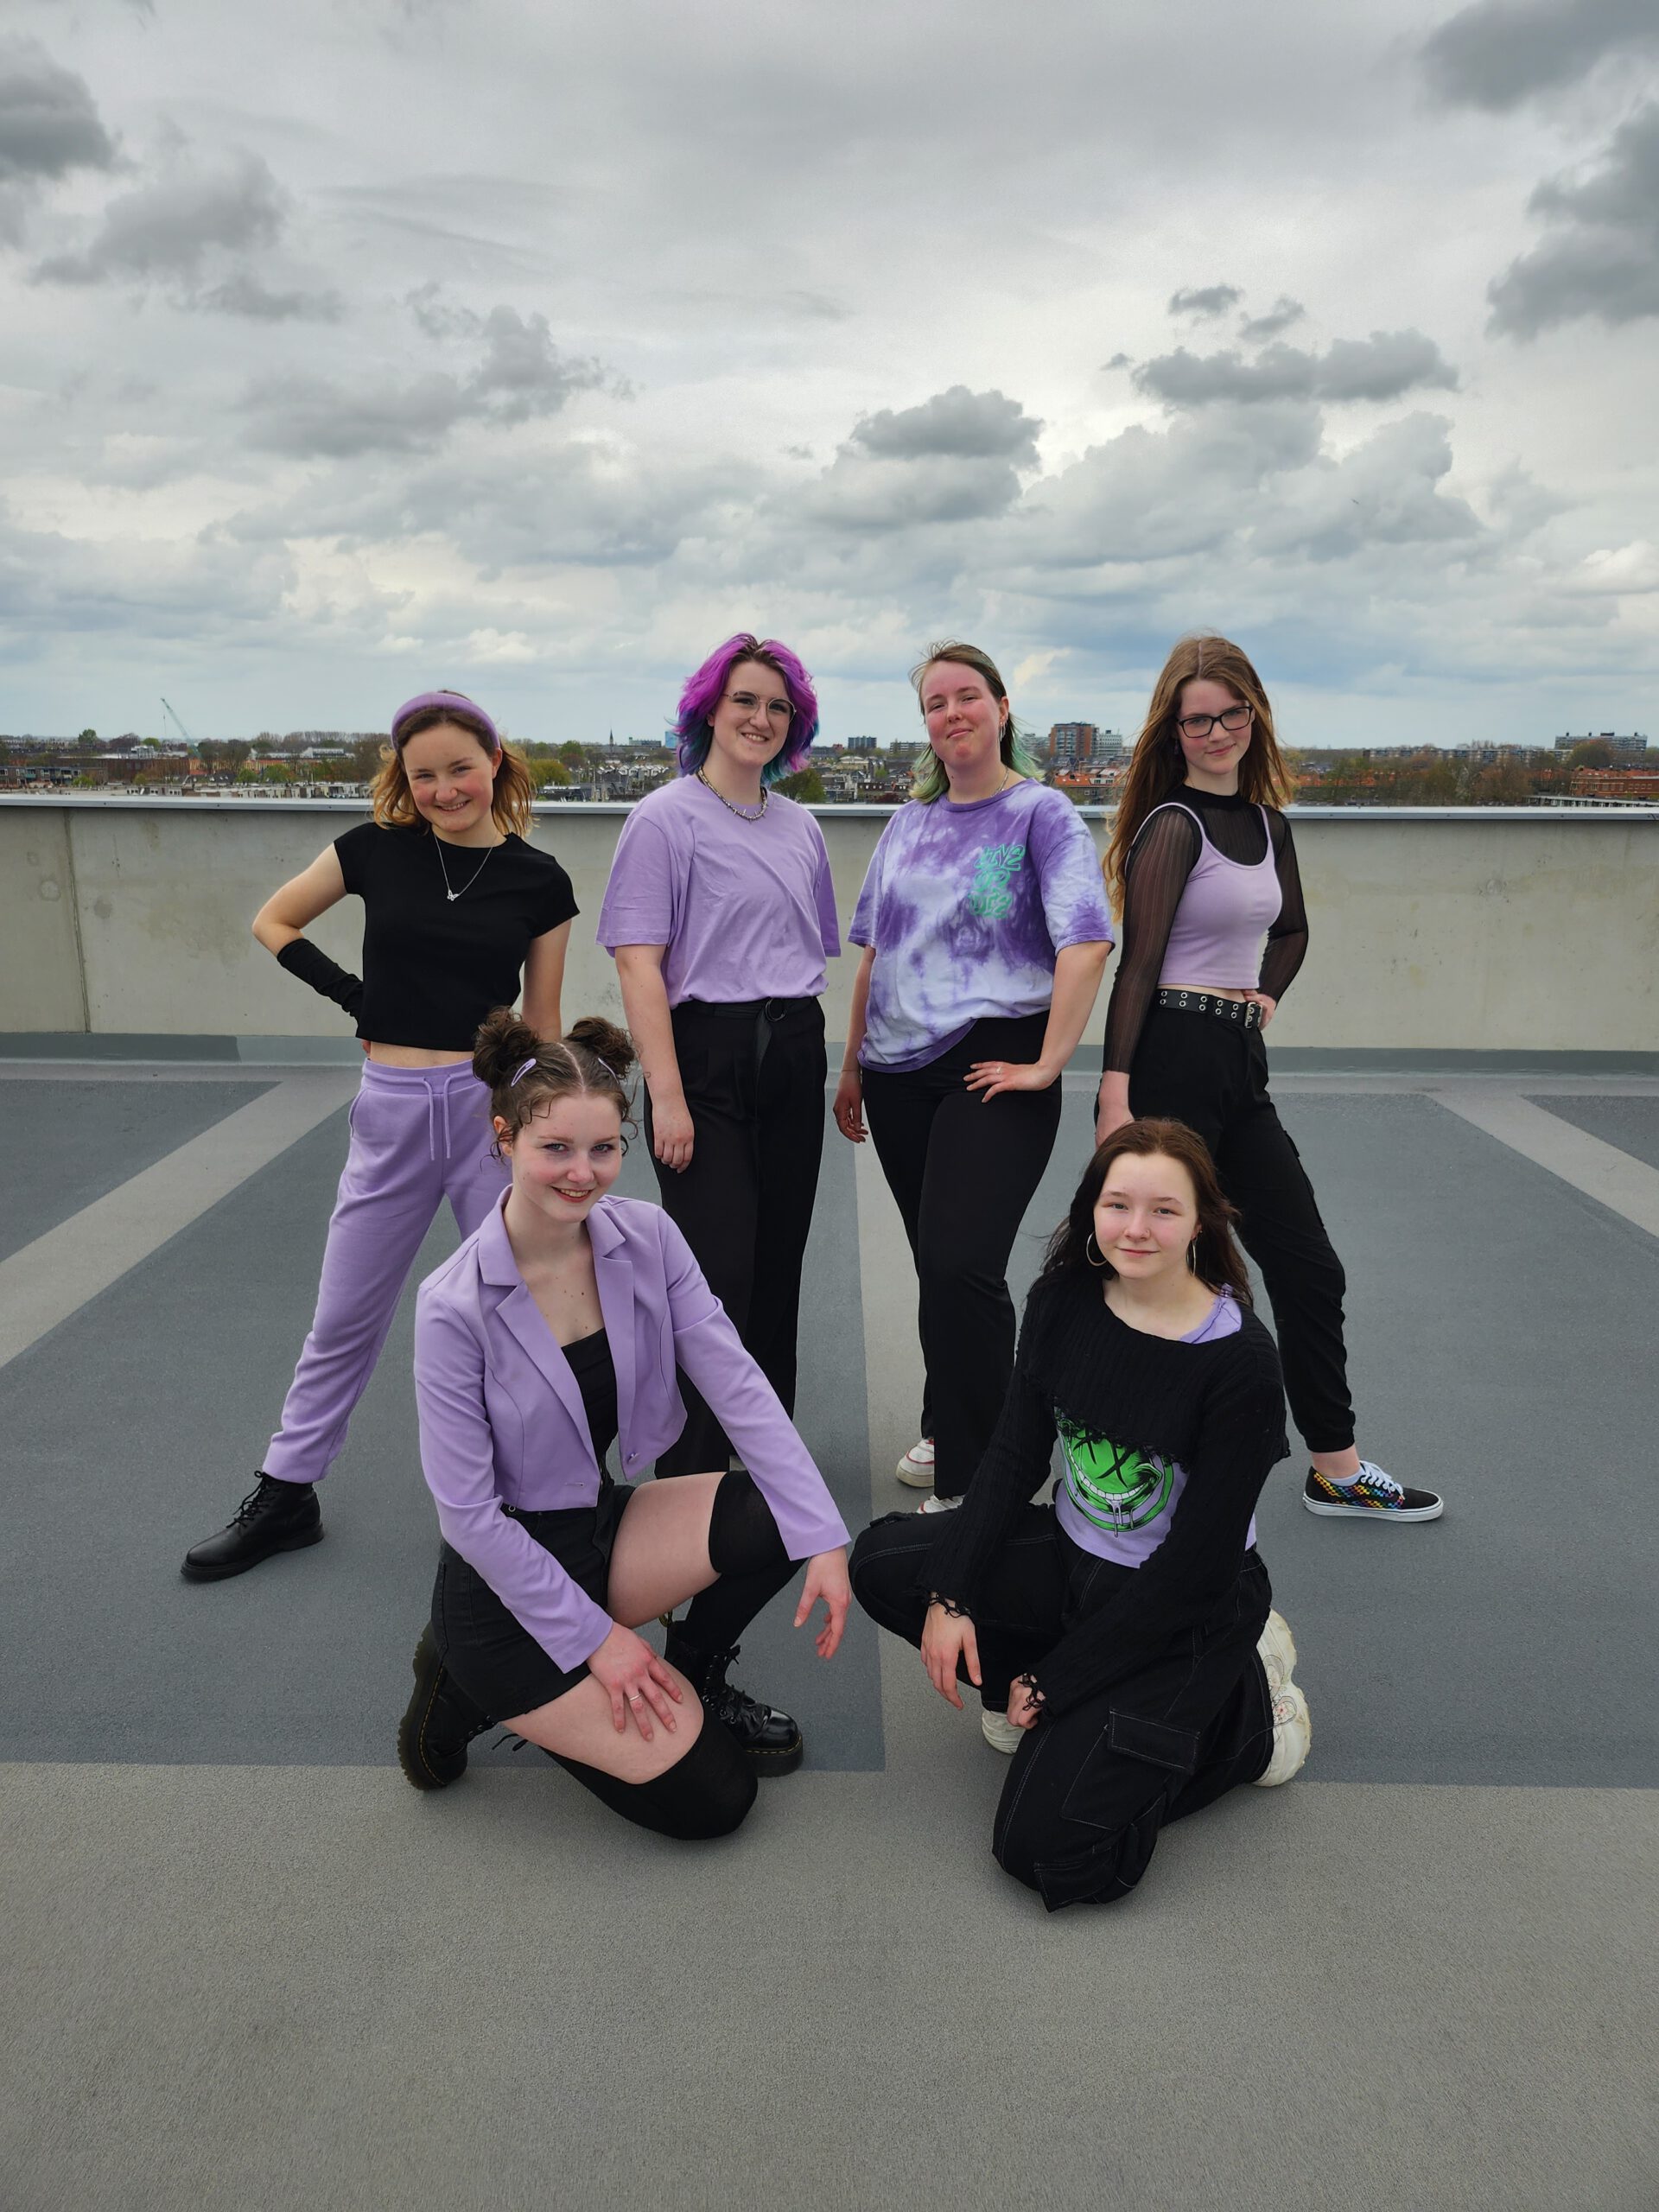 Kpoppers Academy - Kpop Dansles Alphen aan den Rijn, Leiden - Dance Crew